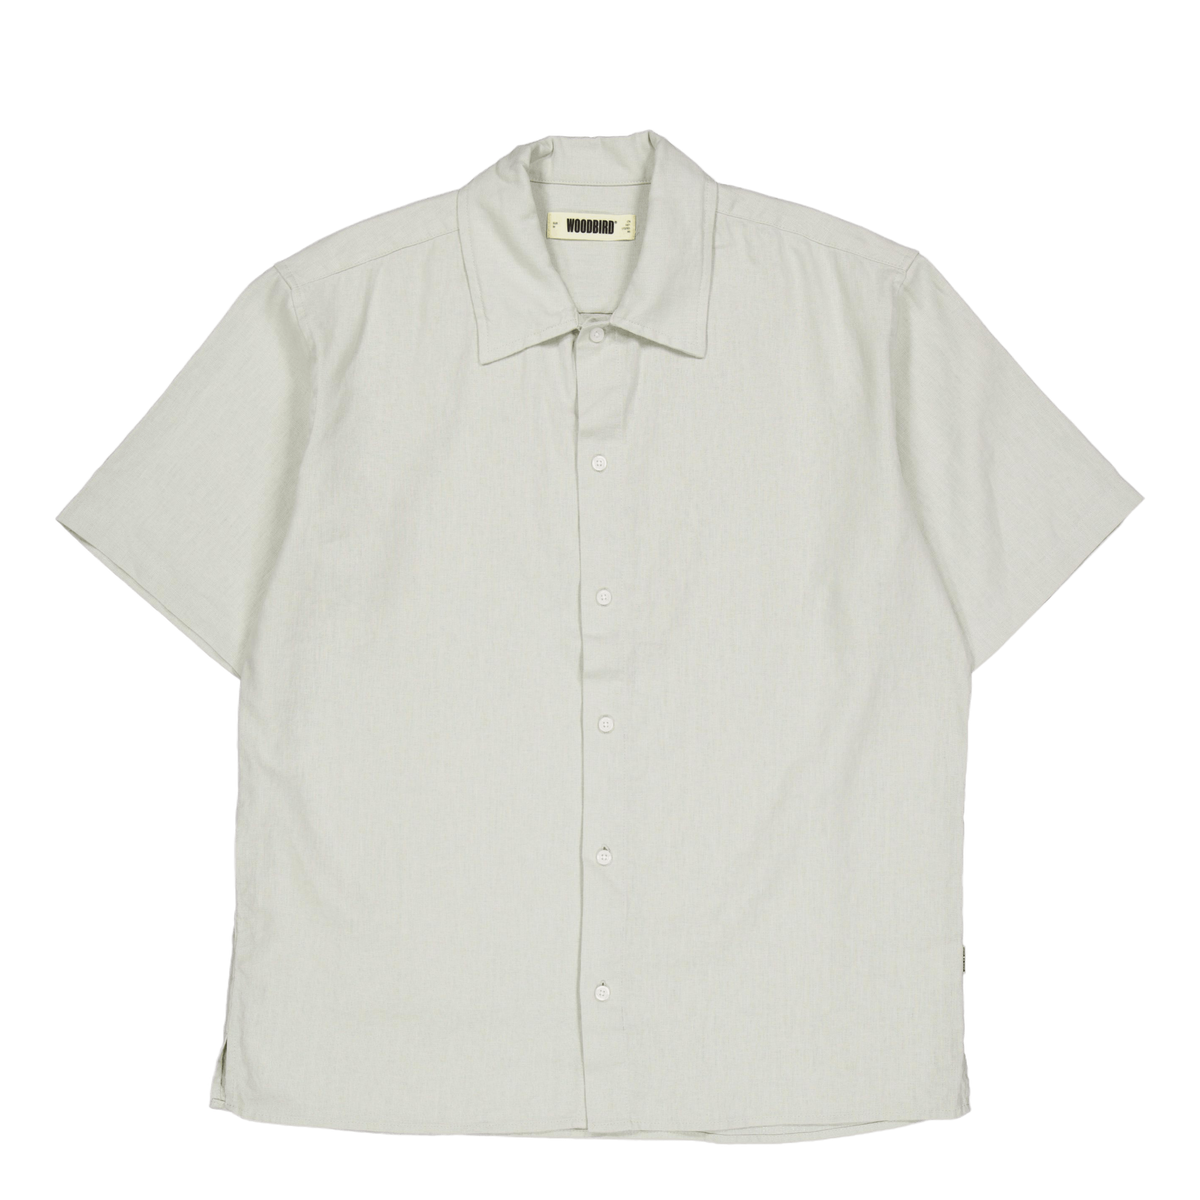 Wbbanks Linen Shirt Mint